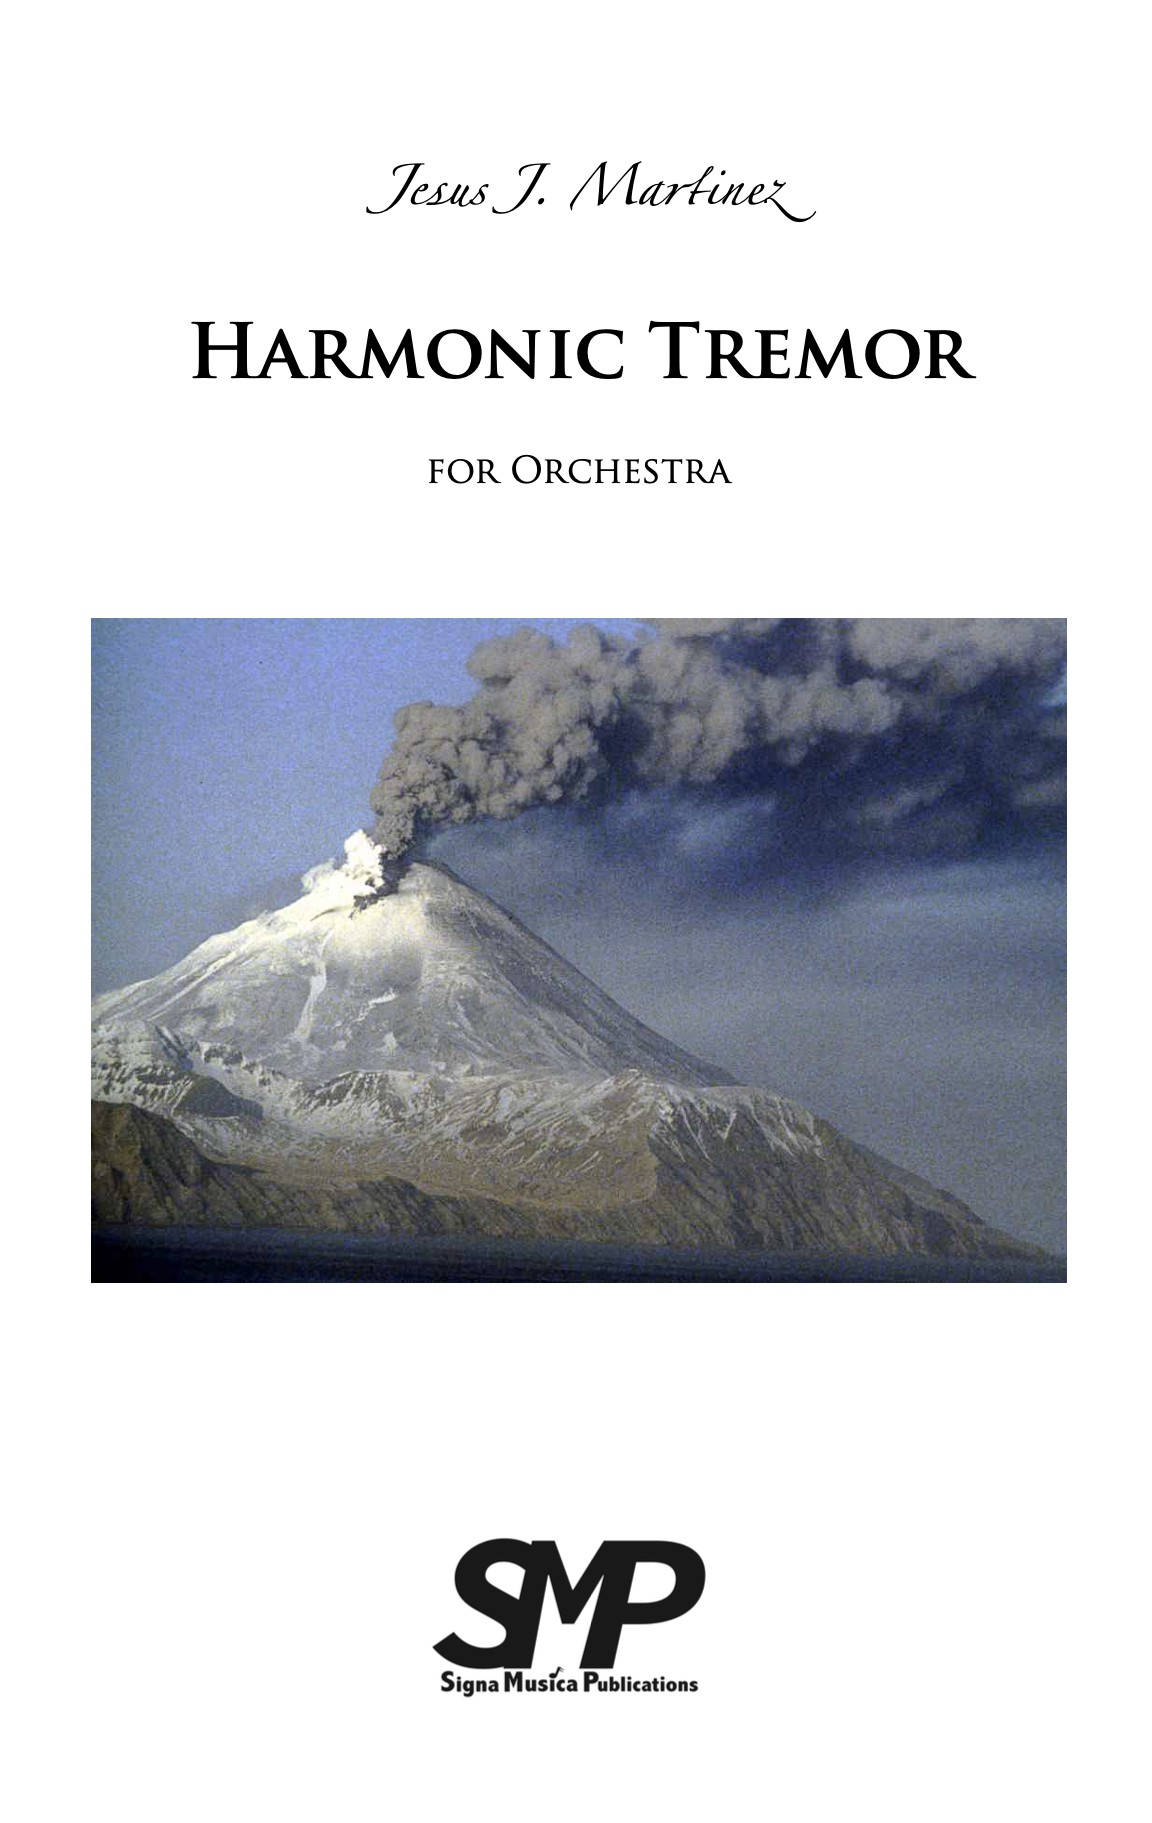 Harmonic Tremor  by Jesus Martinez